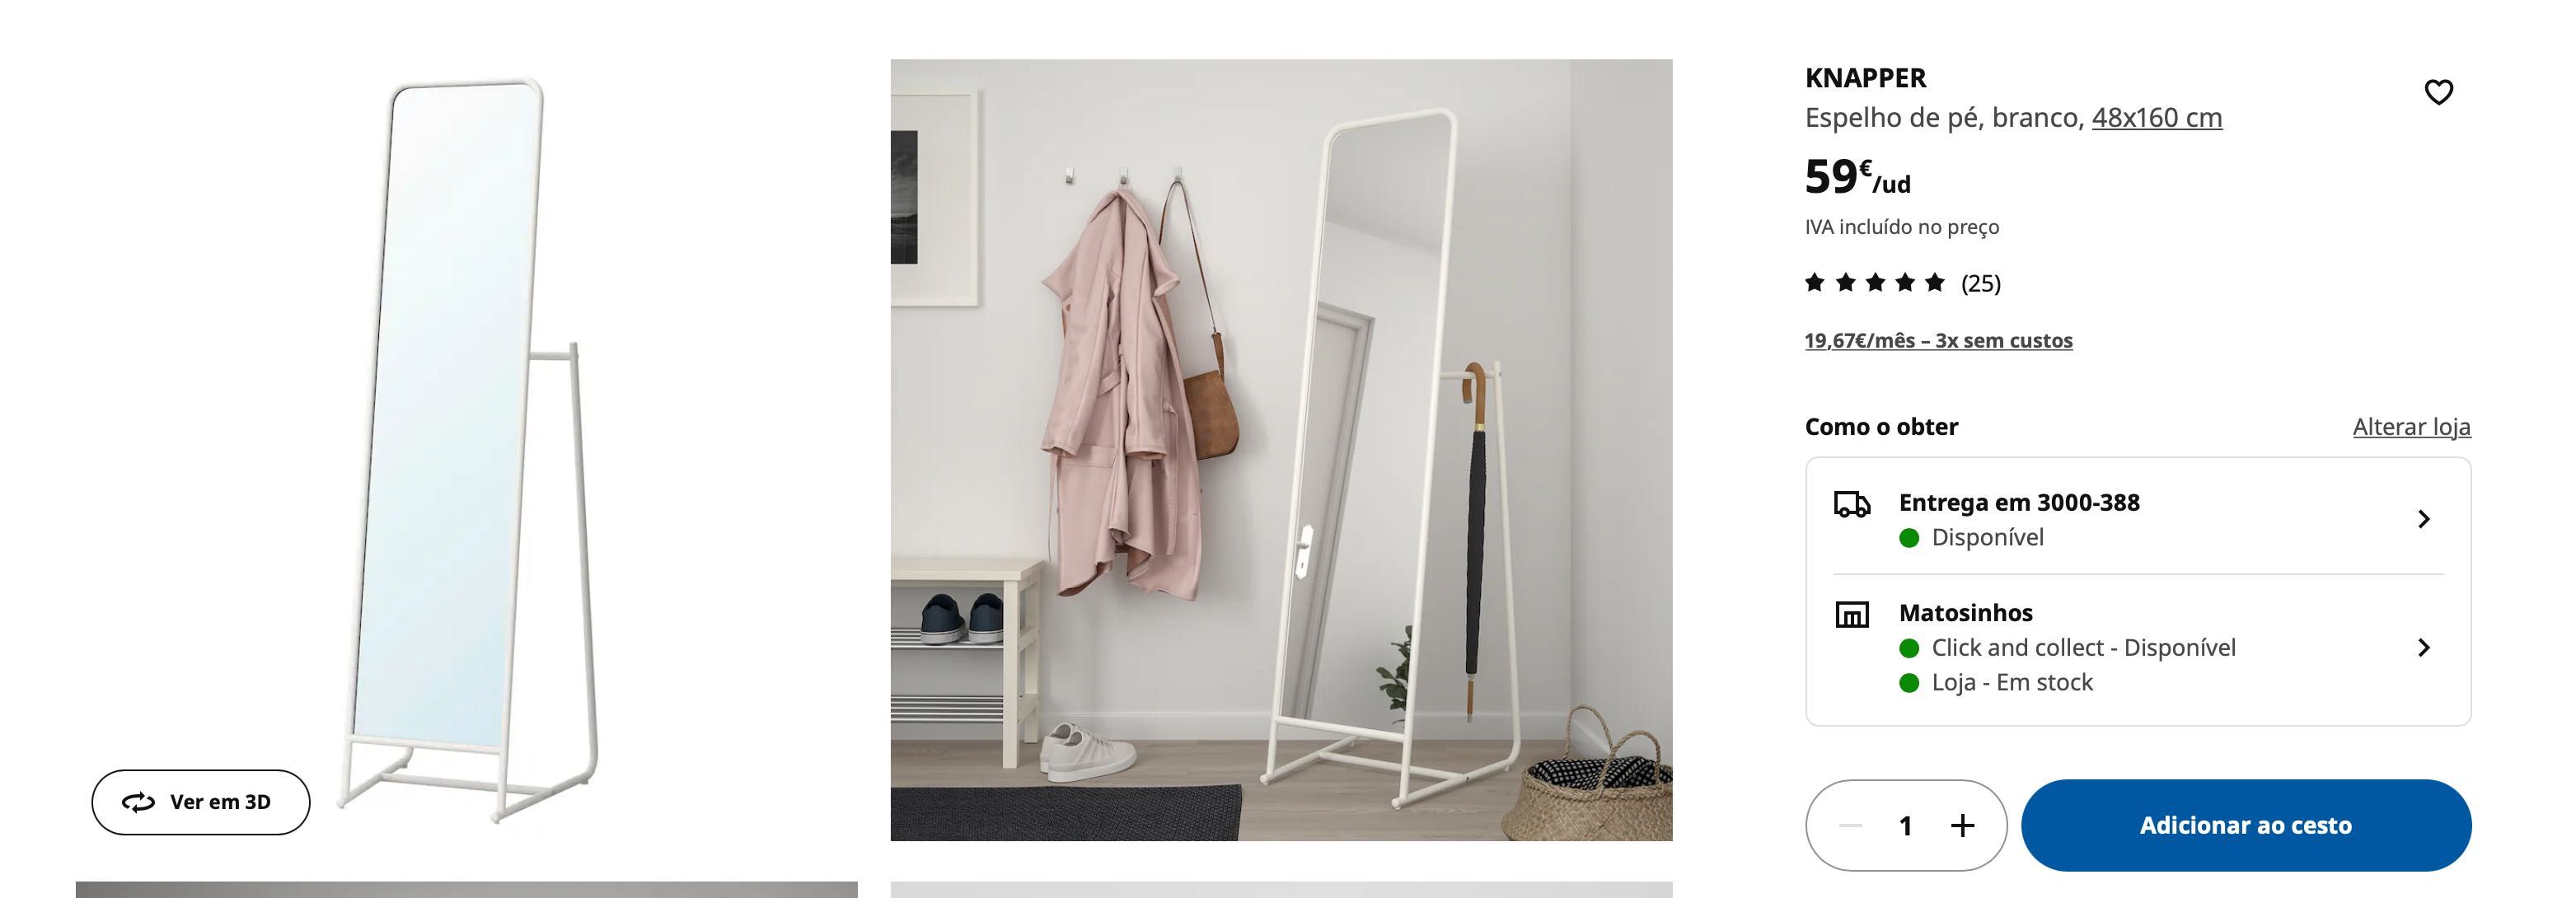 Espelho de pé branco metalico Ikea Knapper